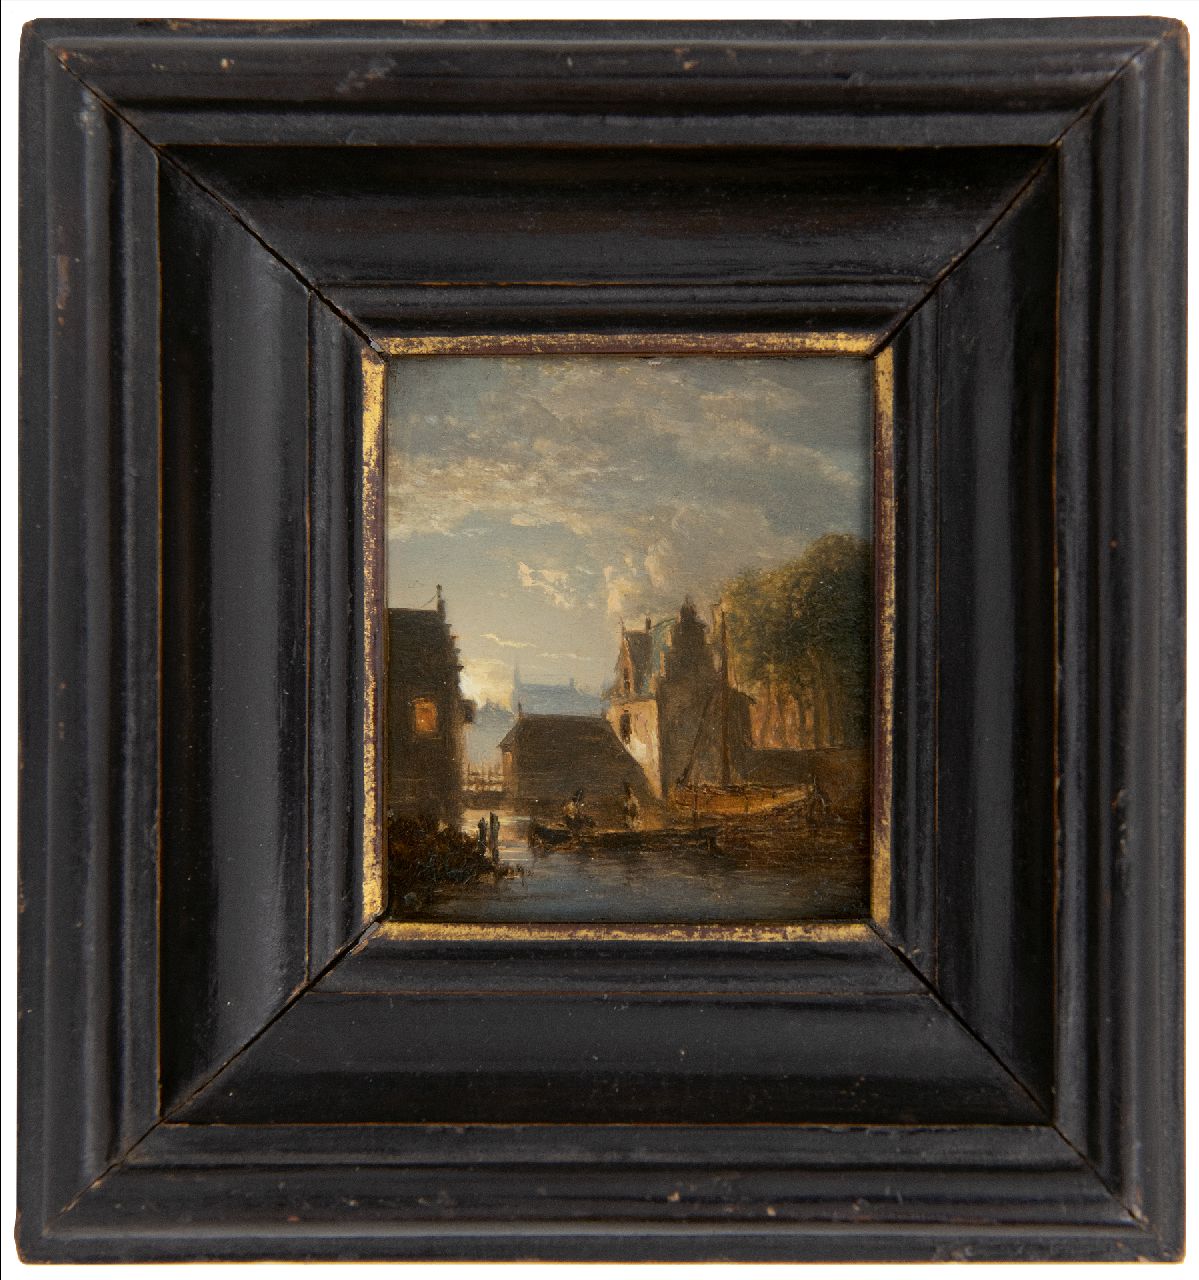 Abels J.Th.  | 'Jacobus' Theodorus Abels | Schilderijen te koop aangeboden | Stadsgrachtje bij maanlicht, olieverf op paneel 7,8 x 7,0 cm